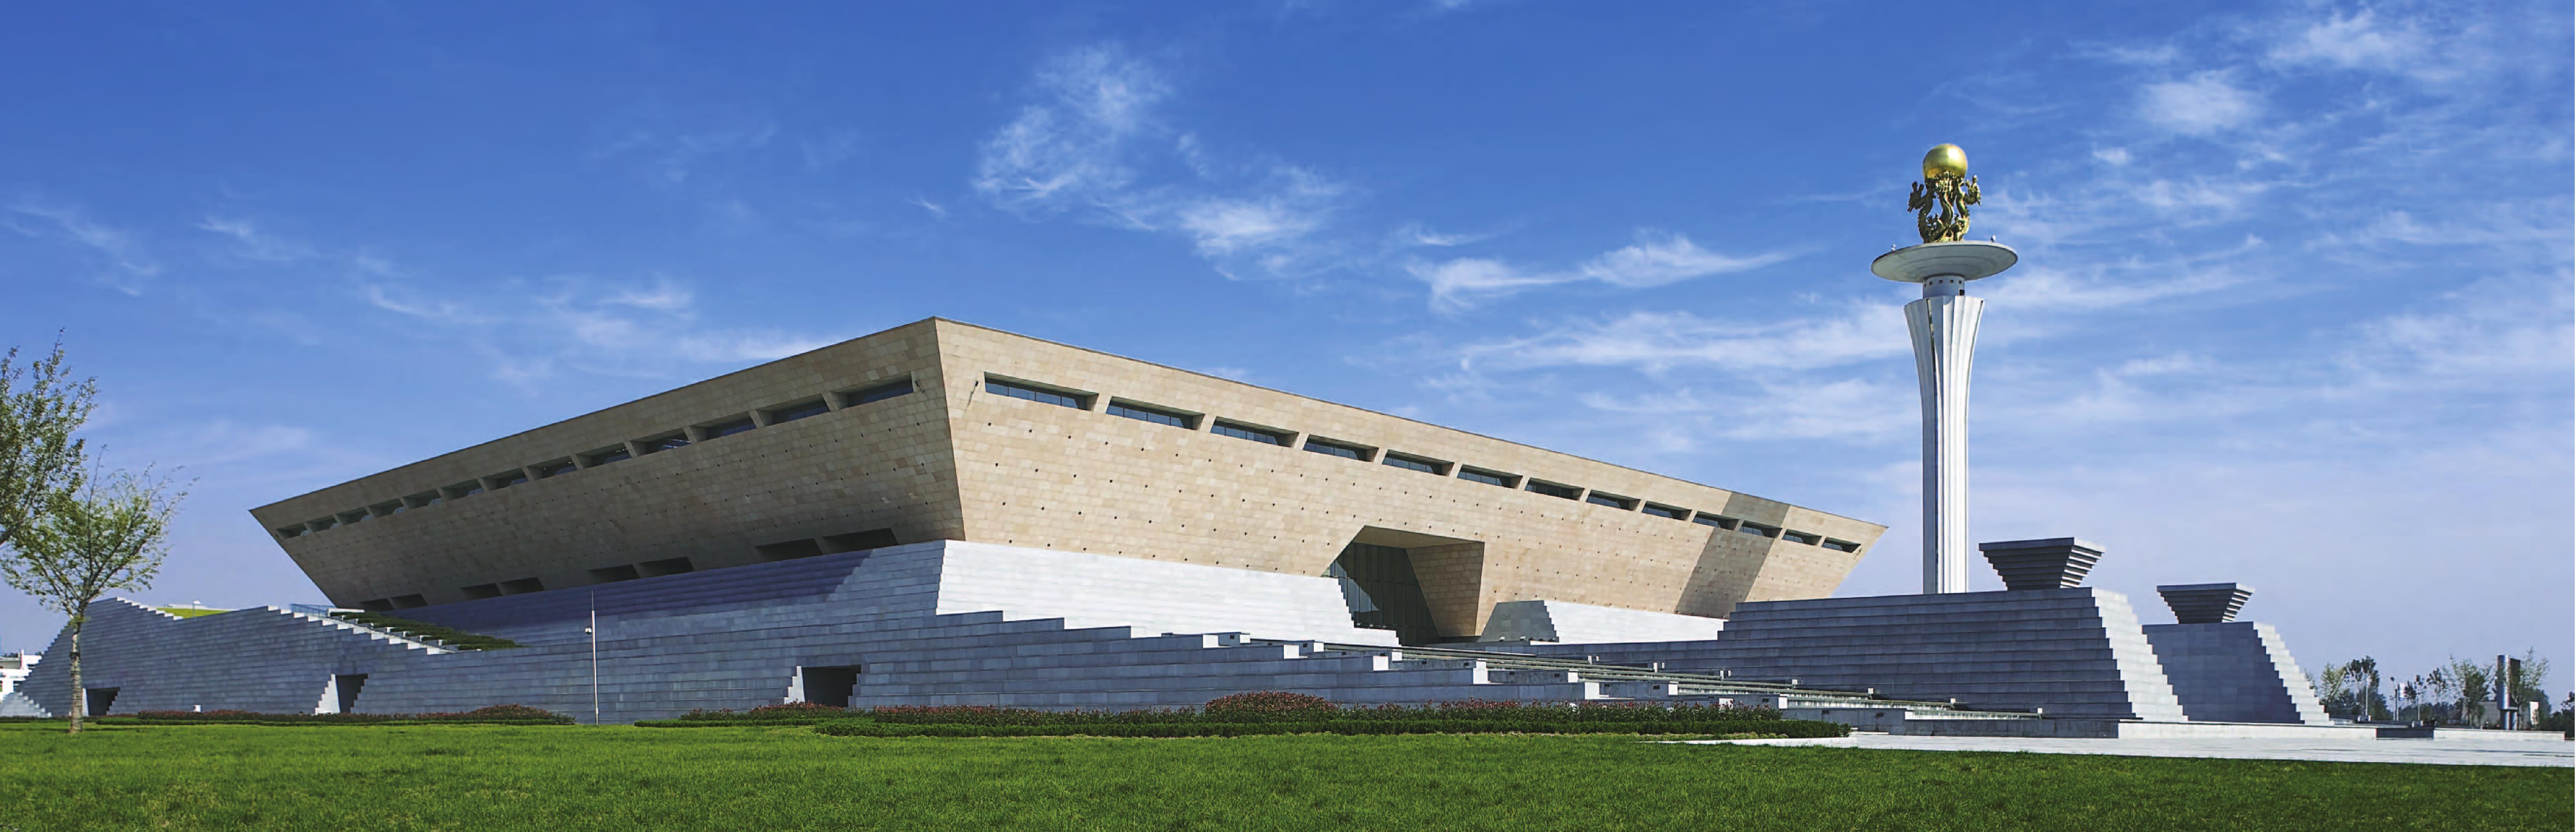 43650㎡竣工时间:2009年洛阳博物馆新馆位于洛阳市中州中路,占地20h㎡